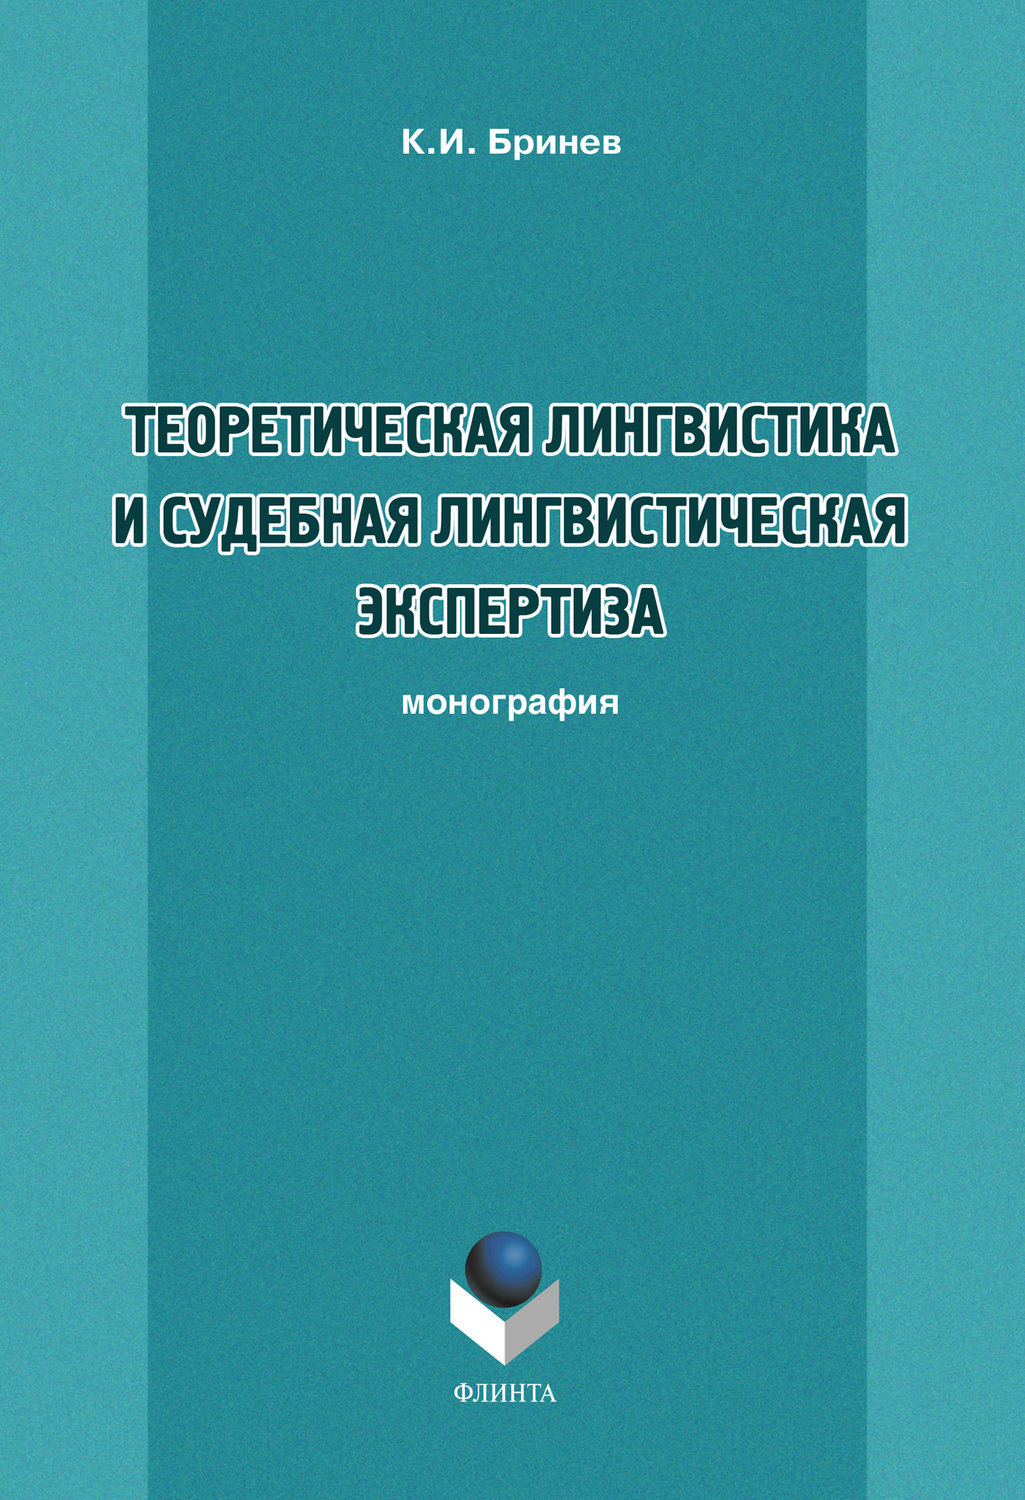 К. И. Бринев - «Теоретическая лингвистика и судебная лингвистическая экспертиза»